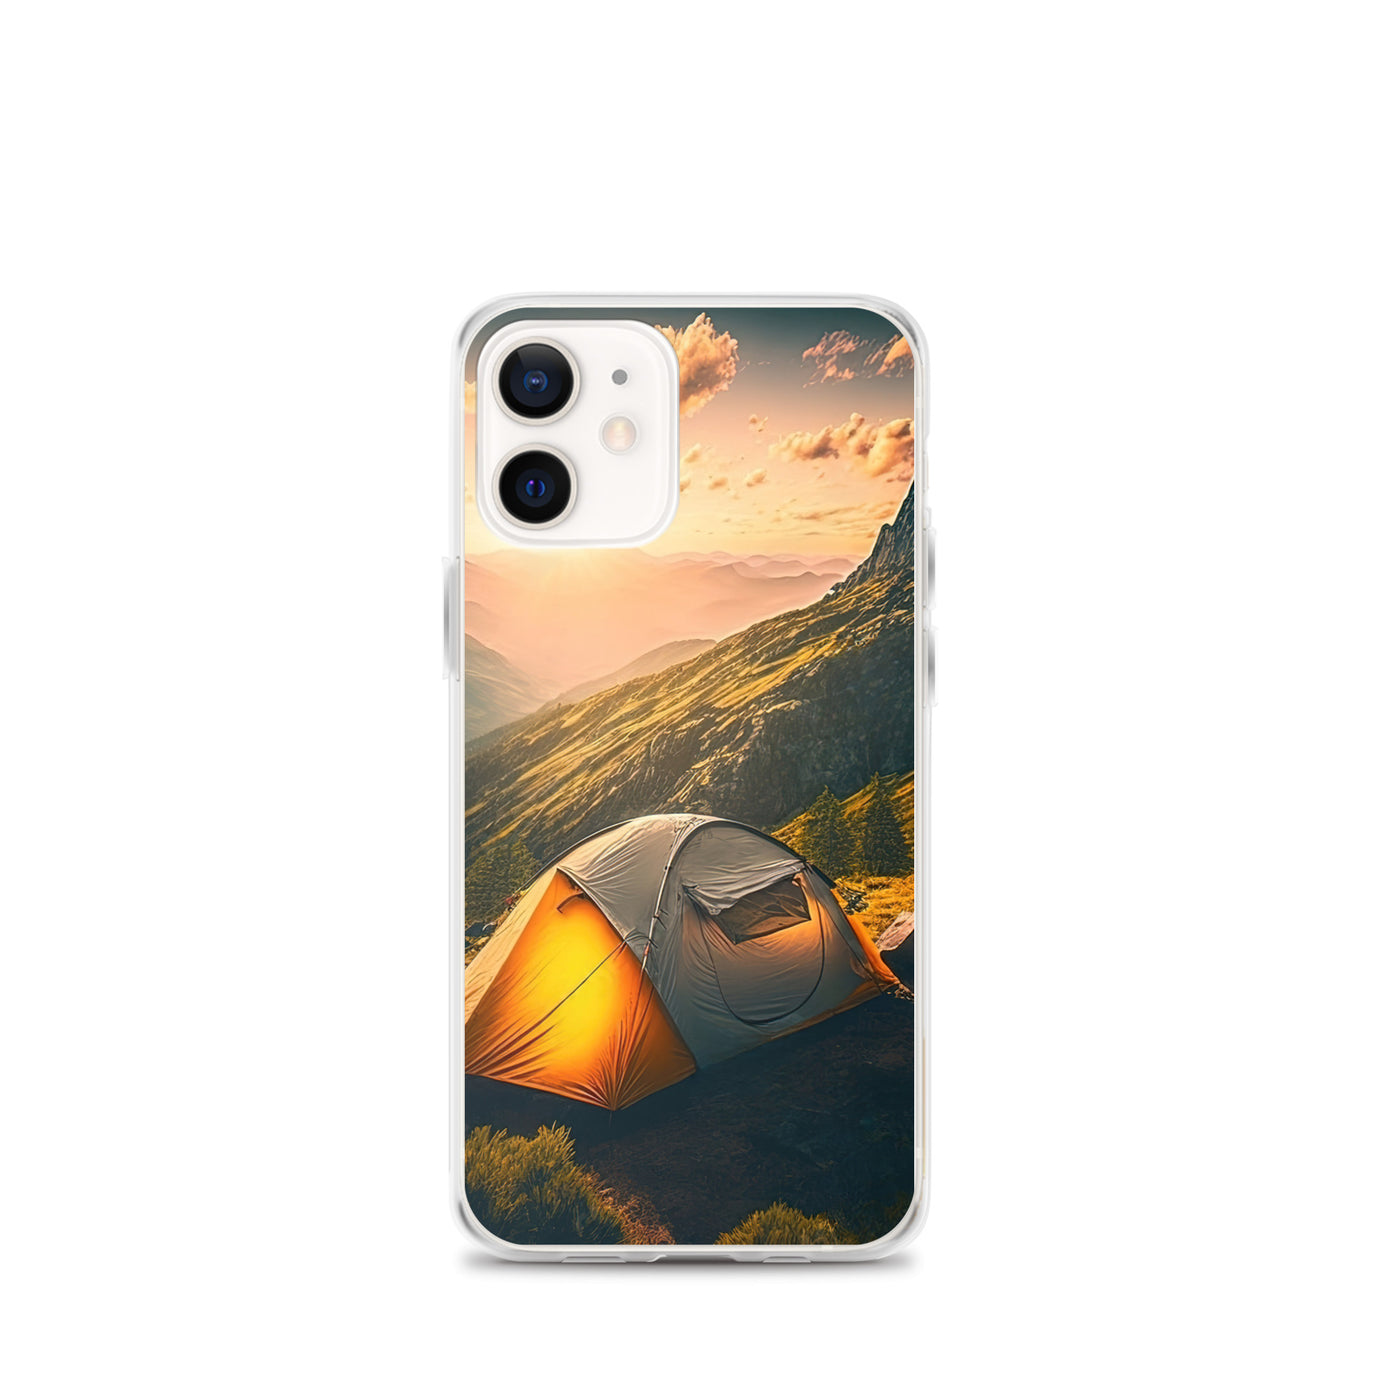 Zelt auf Berg im Sonnenaufgang - Landschafts - iPhone Schutzhülle (durchsichtig) camping xxx iPhone 12 mini